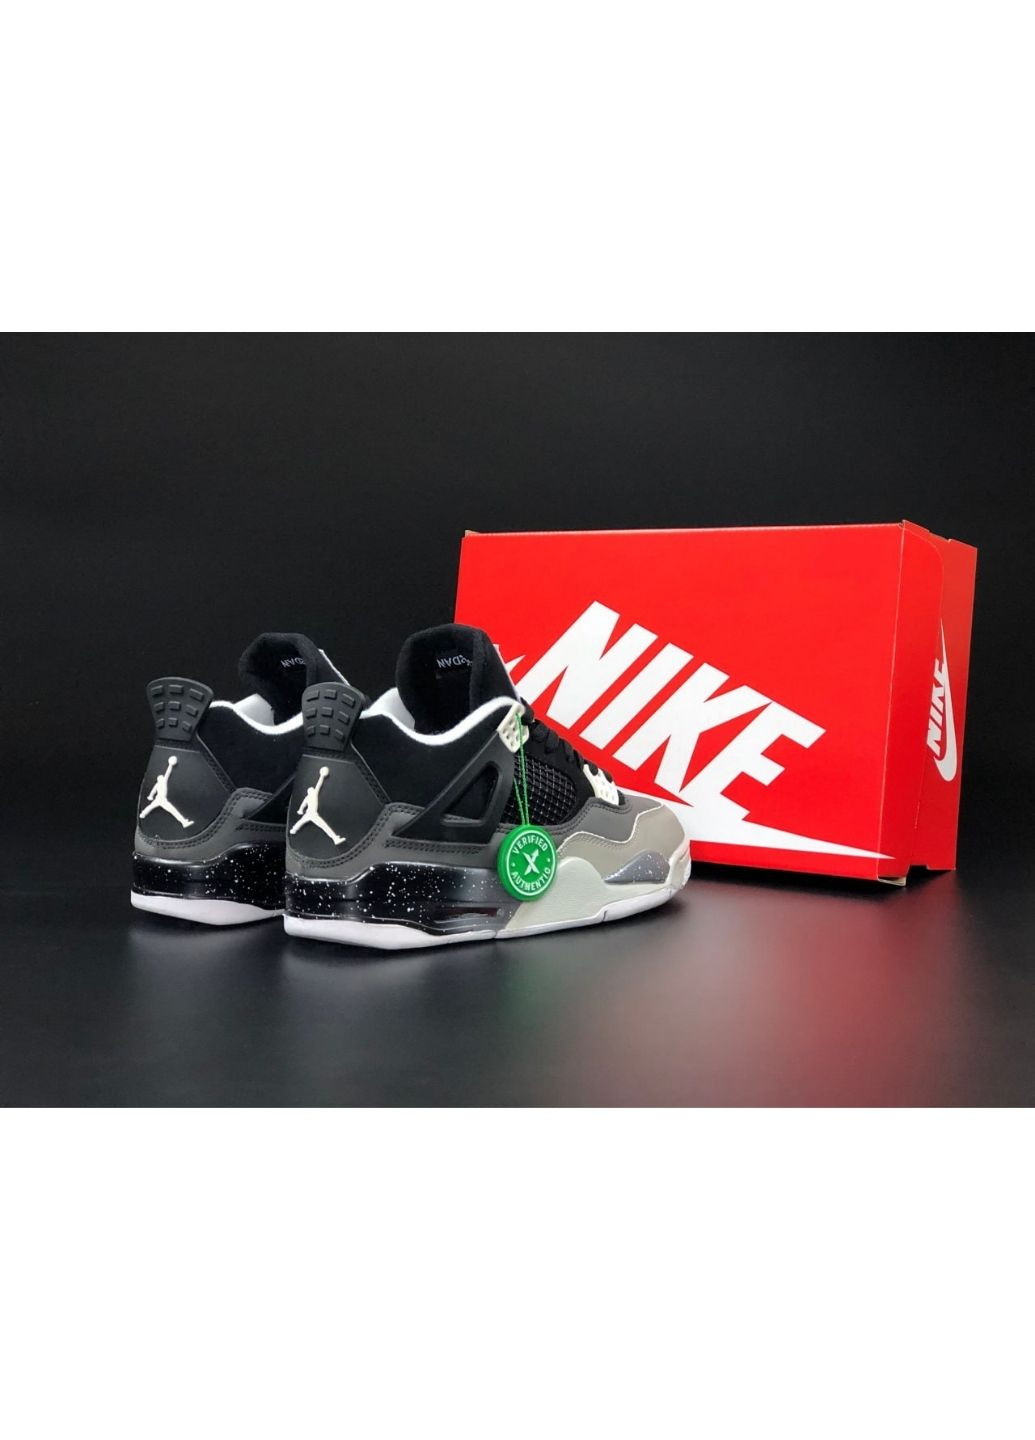 Черные демисезонные мужские кроссовки черные с серым "no name" Nike Air Jordan 4 Retro